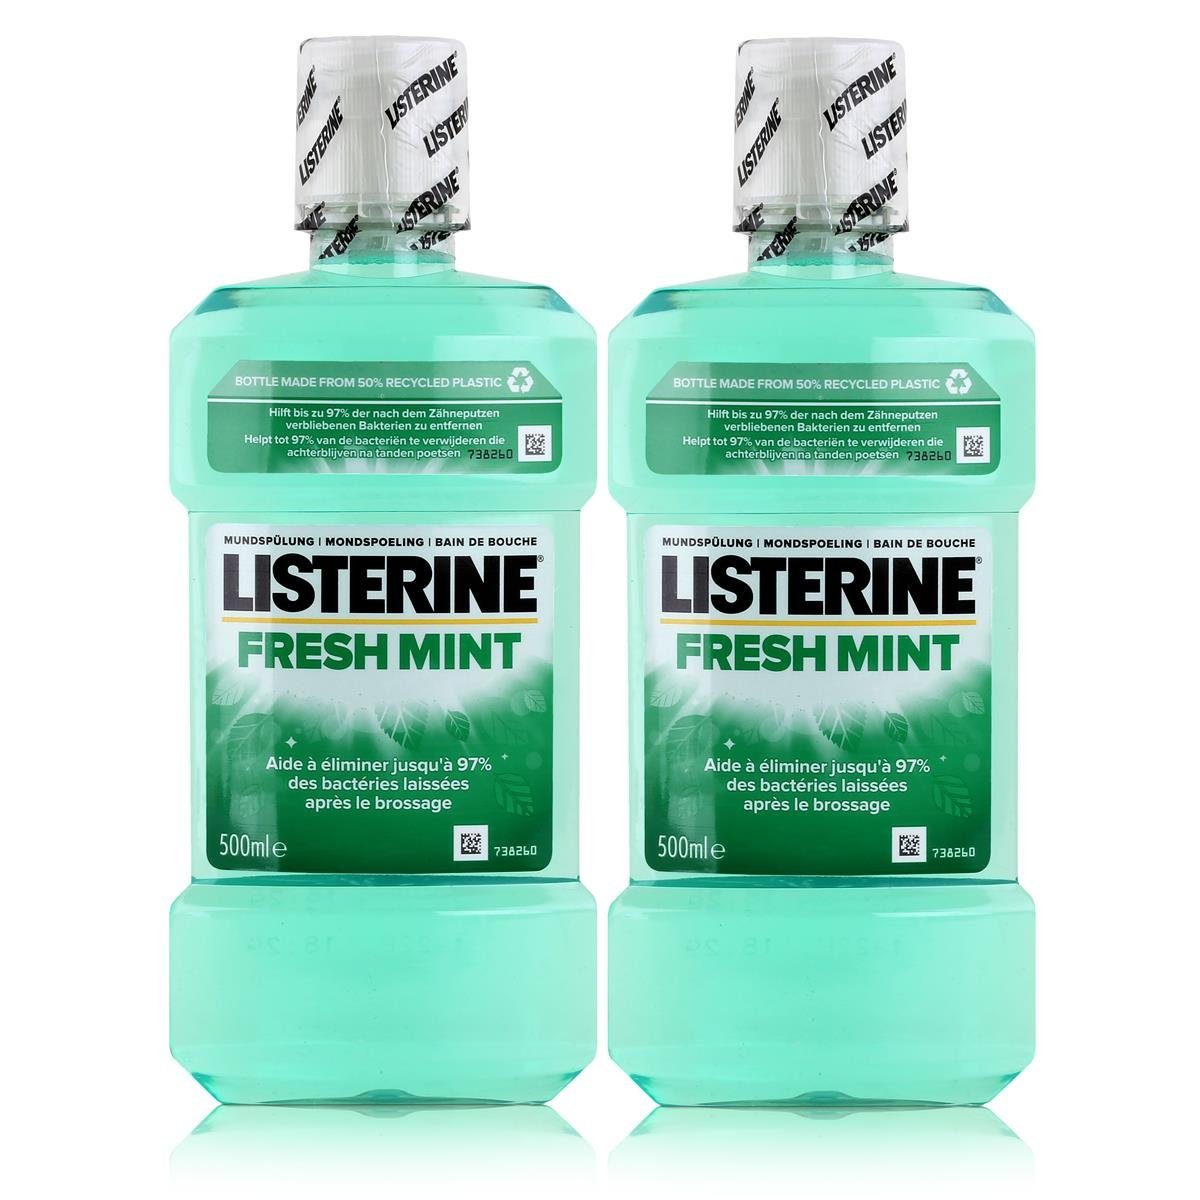 Listerine Mundspülung, Listerine Fresh Mint 500ml - Für die tägliche Mundspülung (2er Pack)